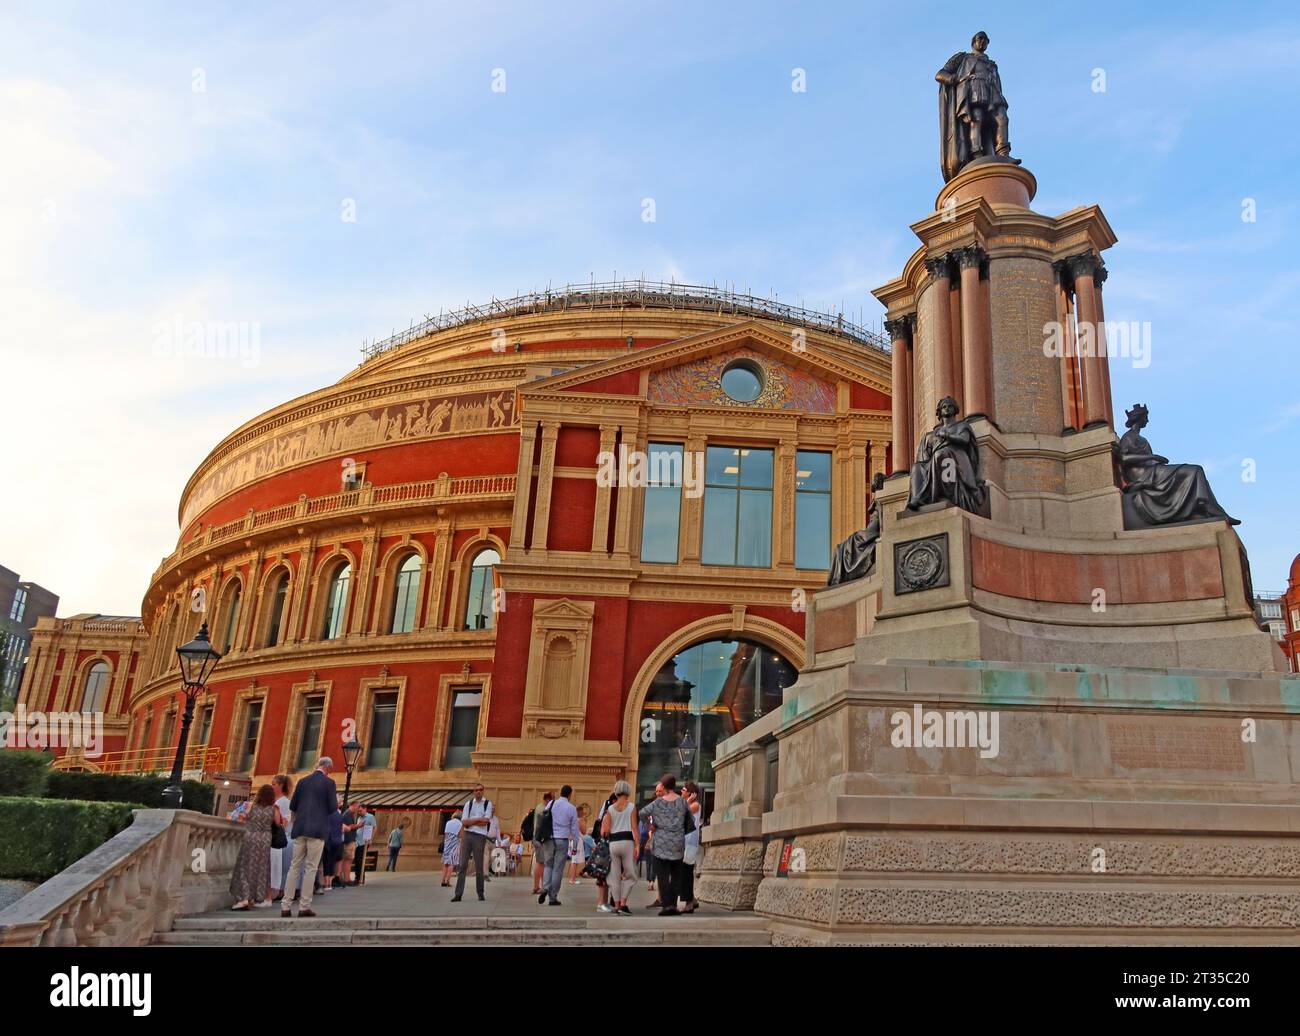 Le Royal Albert Hall dans la soirée, Kensington Gore, Londres, Angleterre, Royaume-Uni, SW7 2AP Banque D'Images